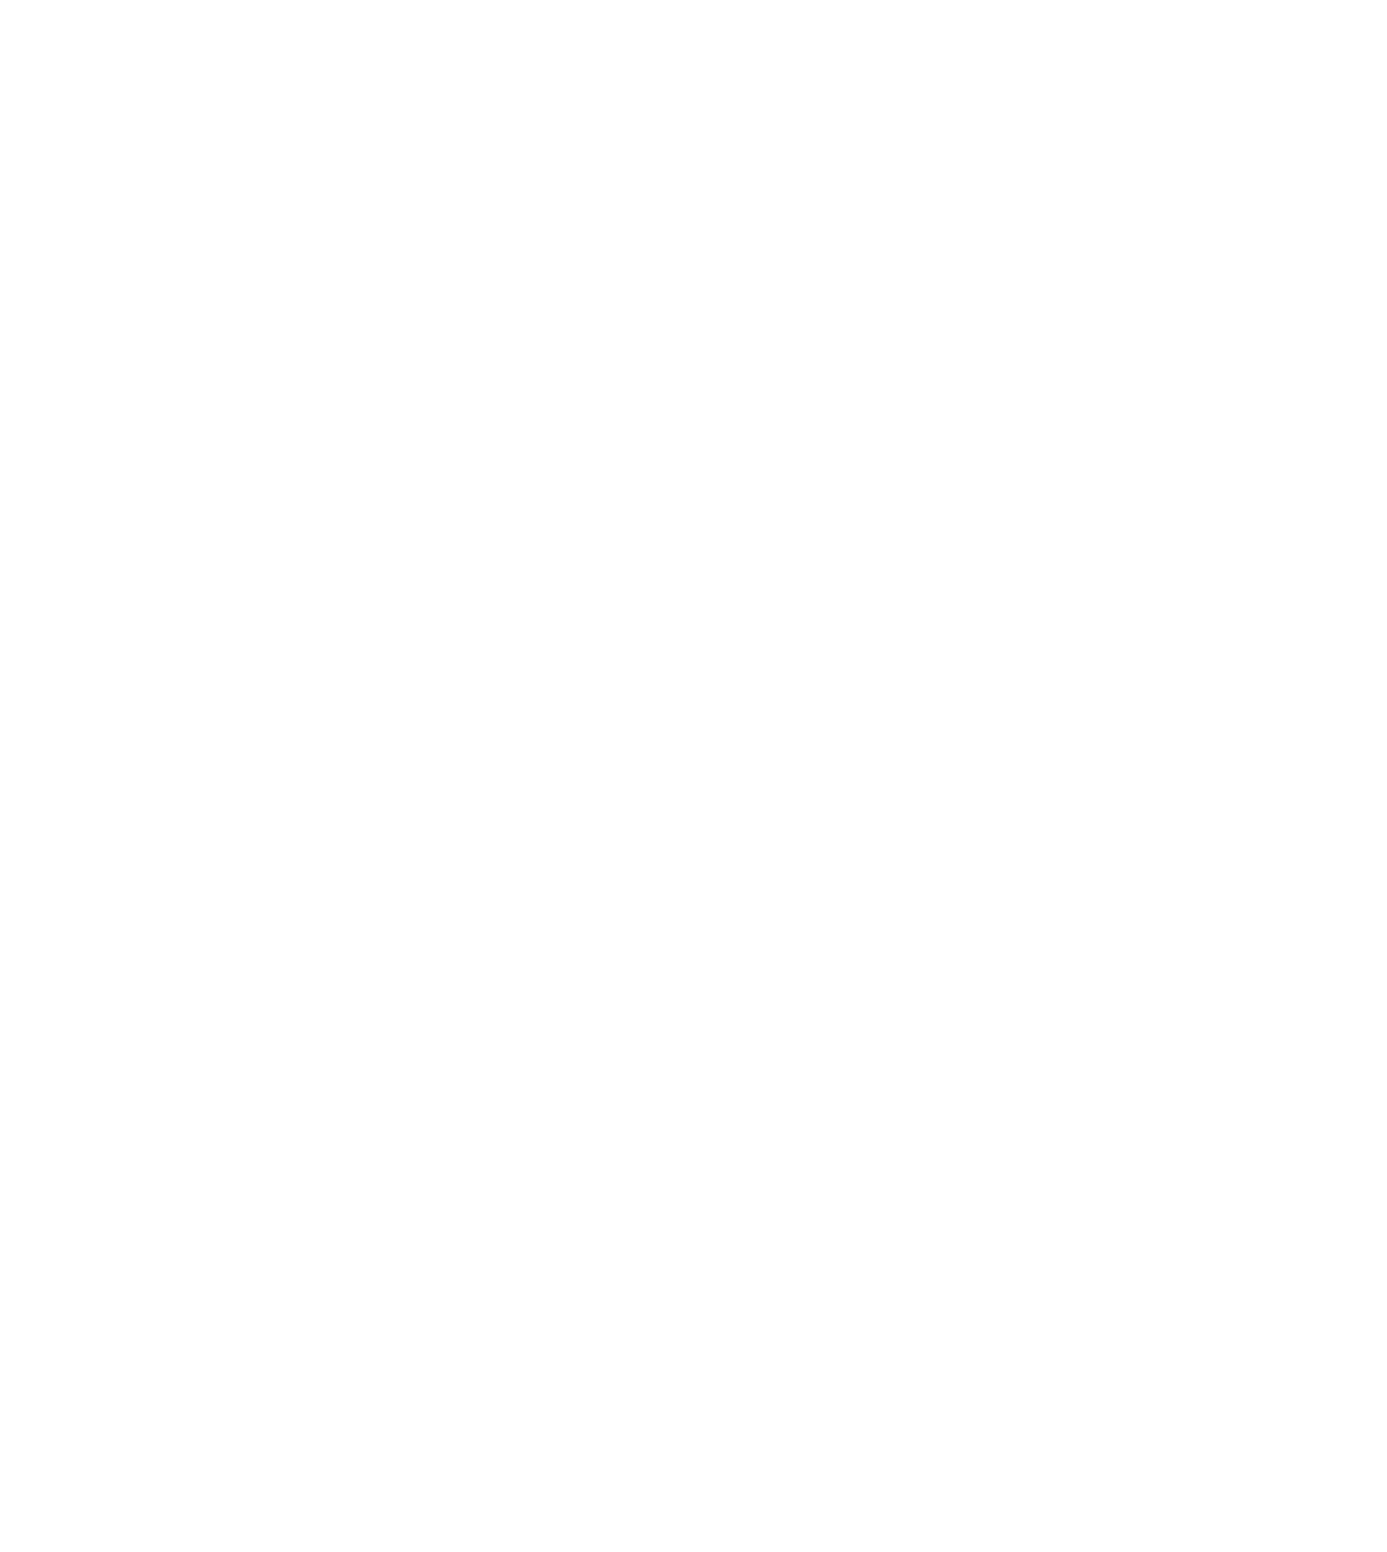 Haier Smart Home logo pour fonds sombres (PNG transparent)